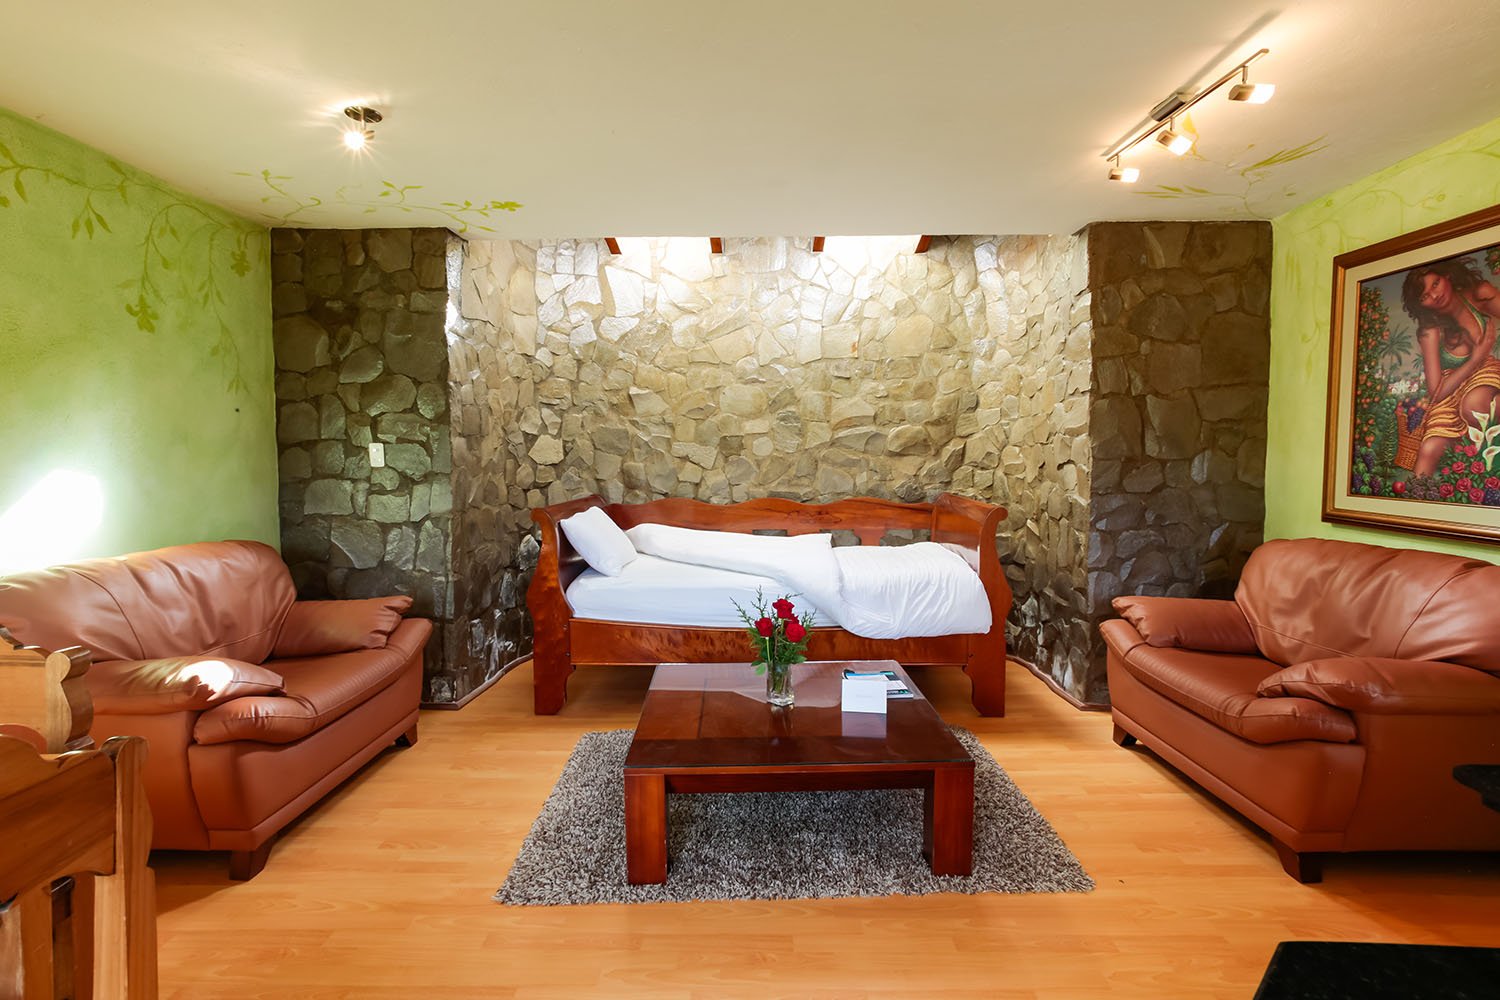 Suite Room Atahualpa 40 - Luna Volcan - Hotel in Banos Ecuador.jpg